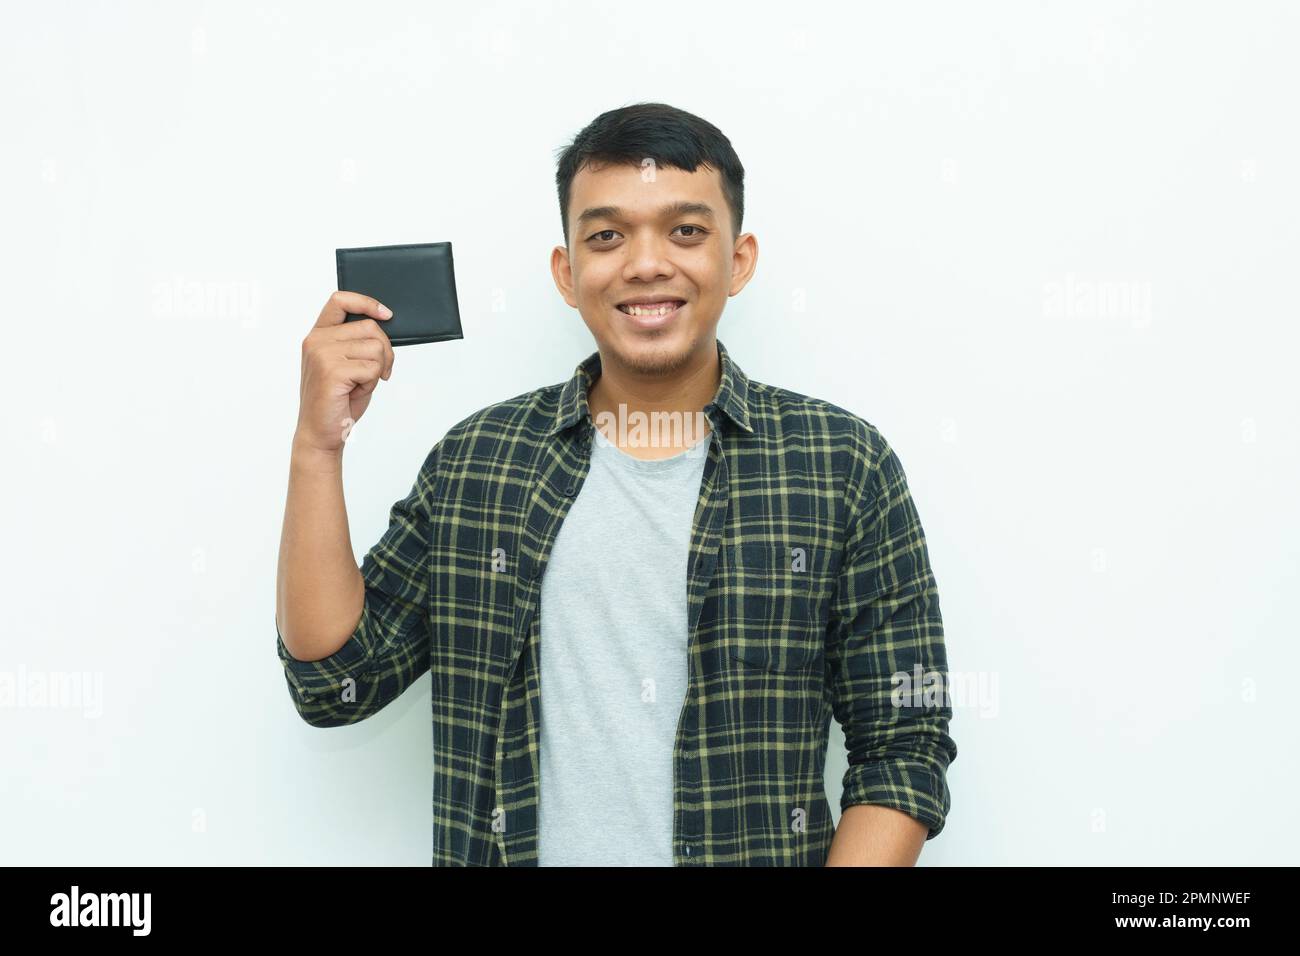 Ein junger asiatischer Mann lächelt, während er die schwarze Brieftasche in der Hand hält Stockfoto